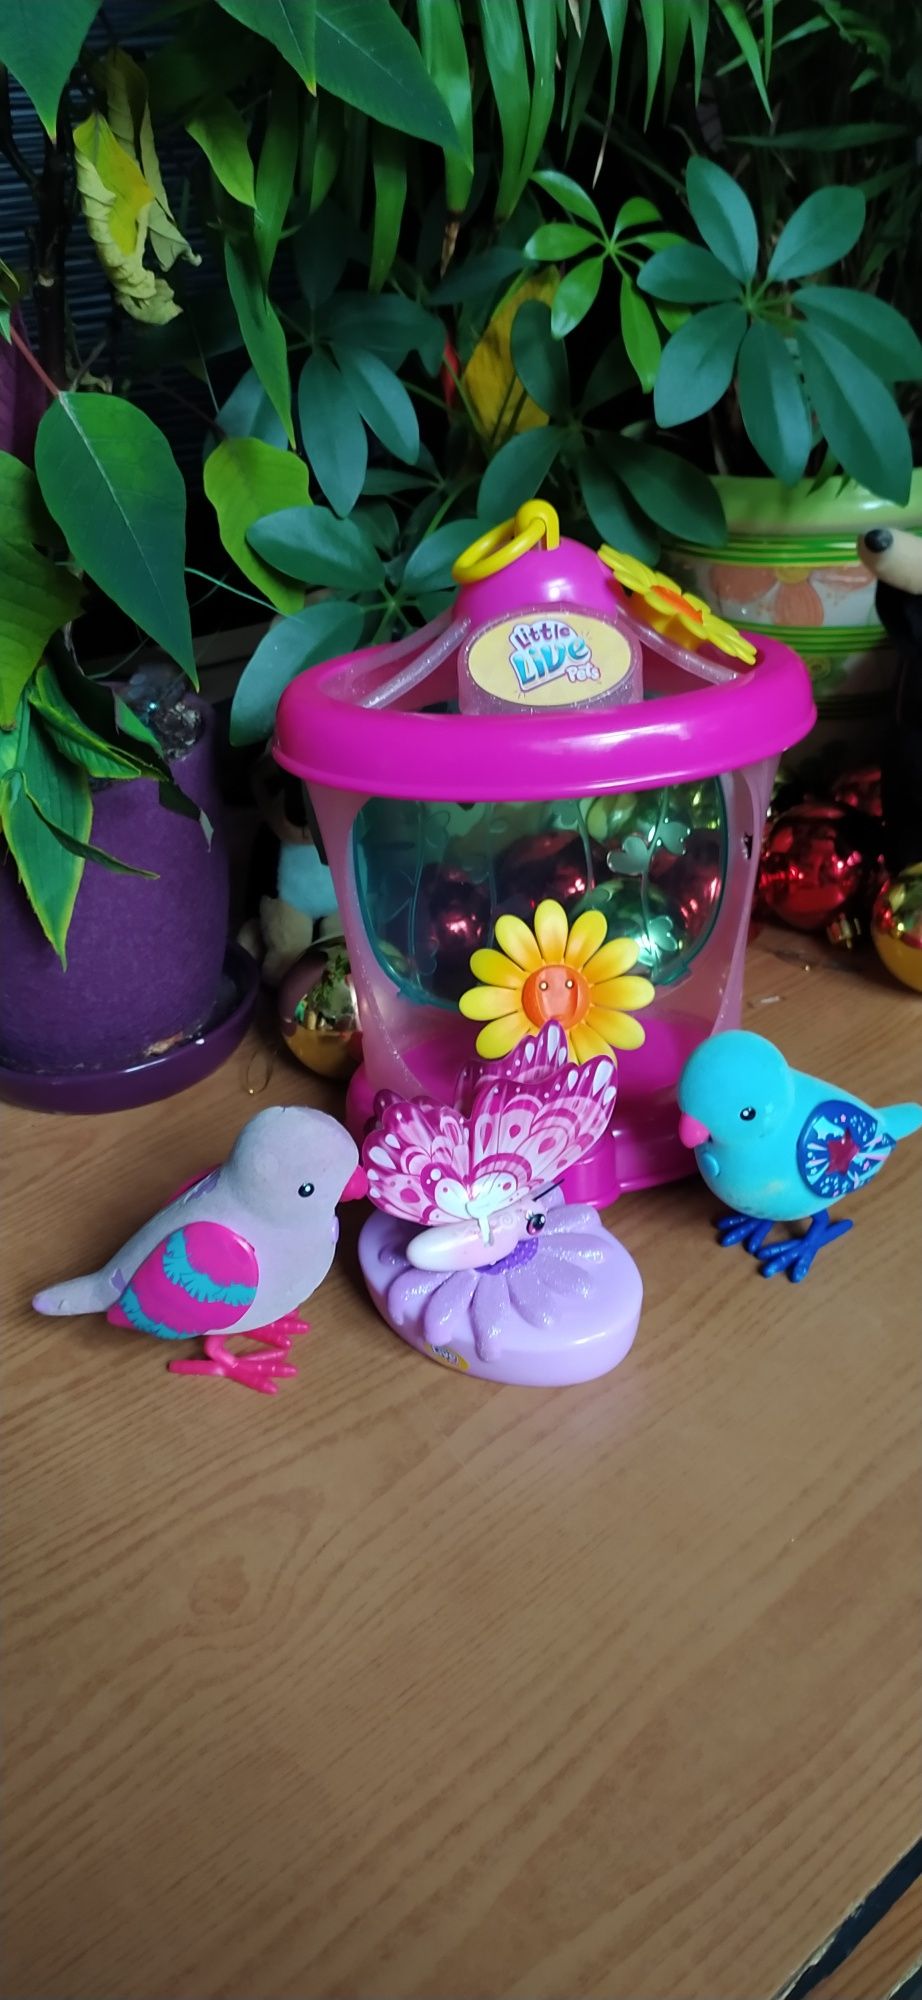 Бабочка Little Live Pets: интерактивная игрушка из серии Литл Лайв Пет